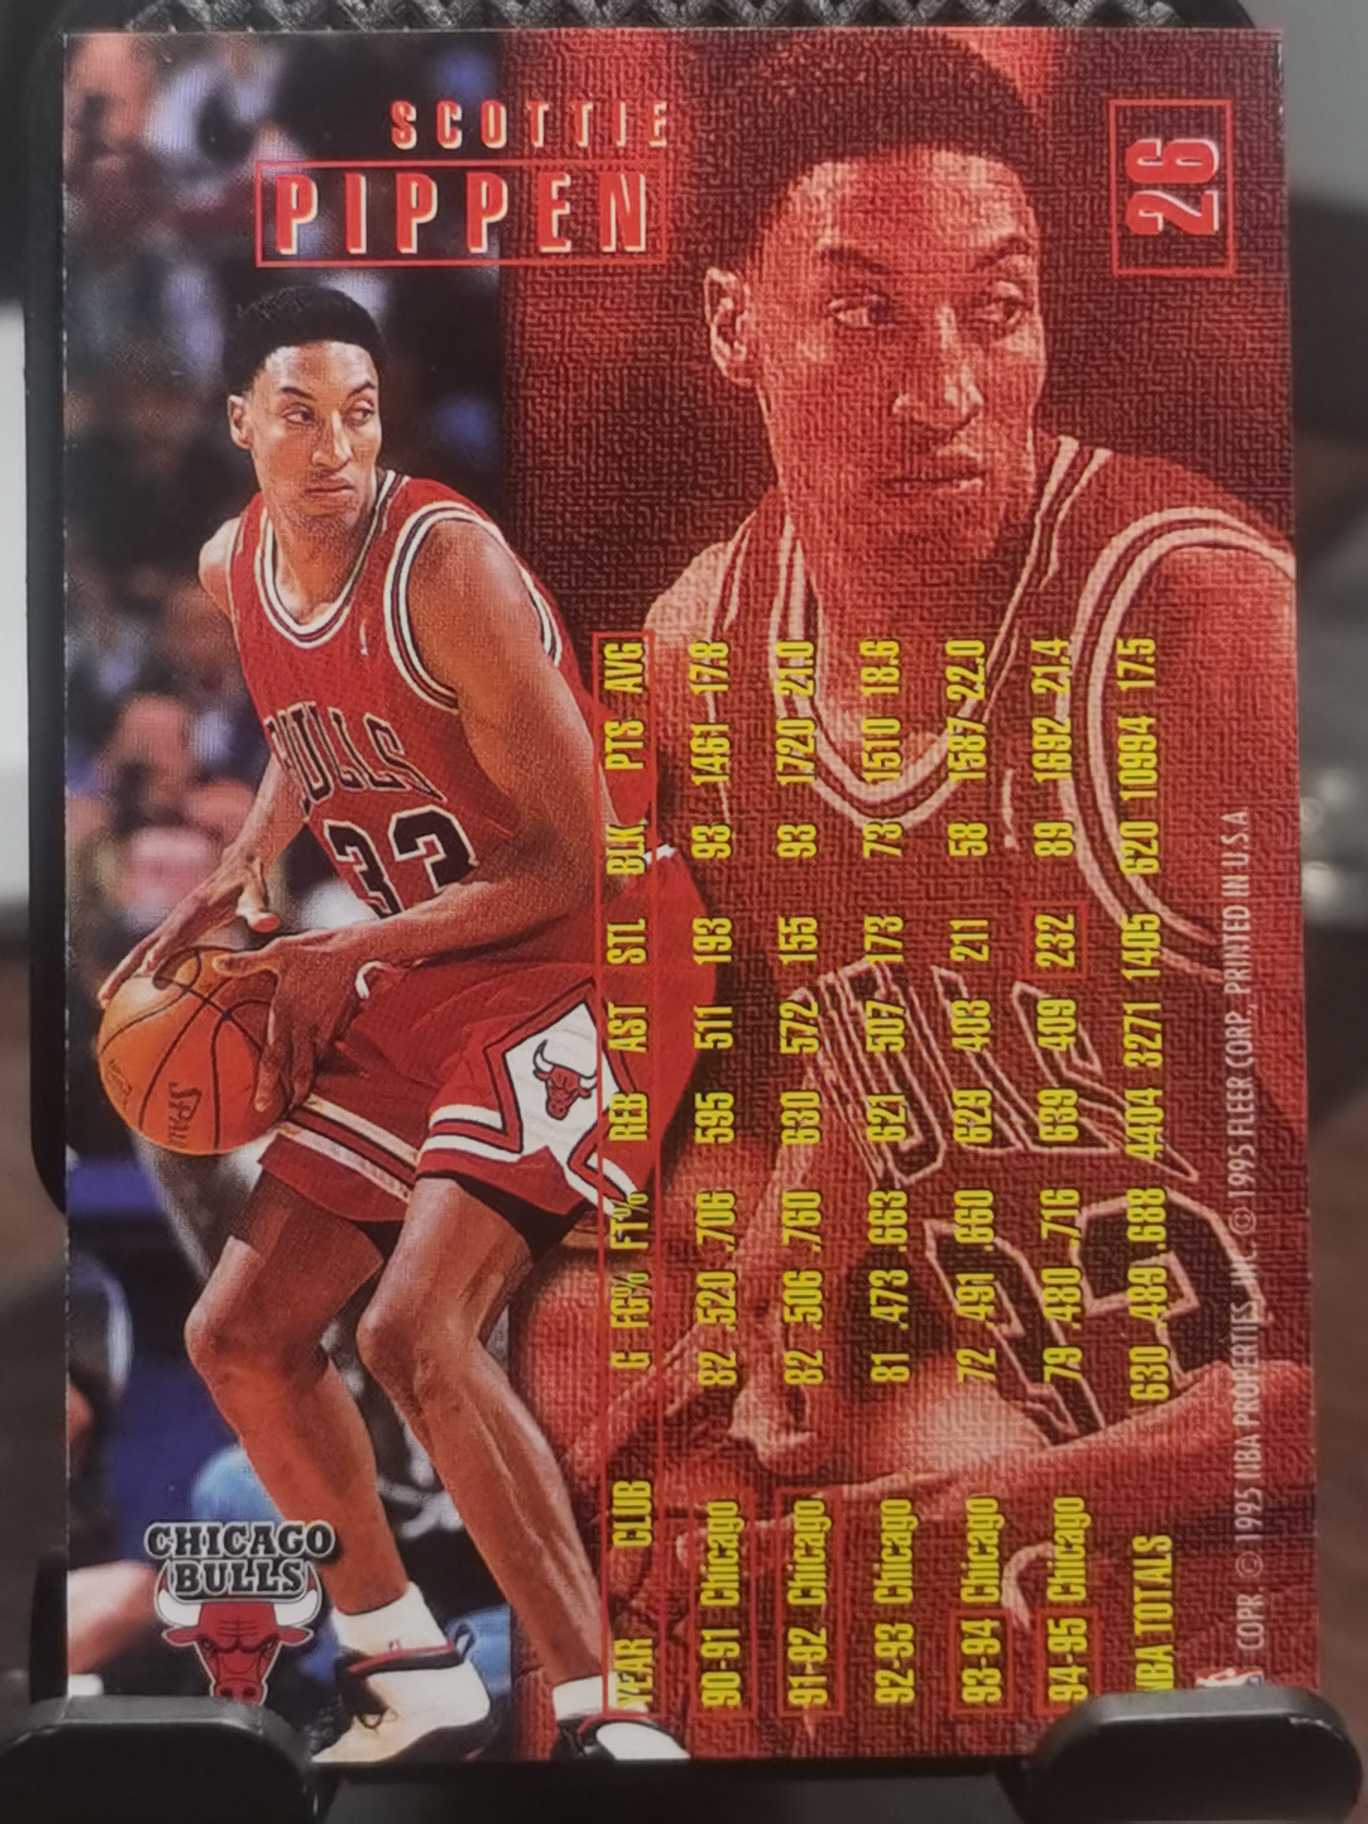 1995-96 Fleer NBA Hoops Scottie Pippen 公牛二当家 蝙蝠侠 斯科蒂 皮蓬 球皮特卡